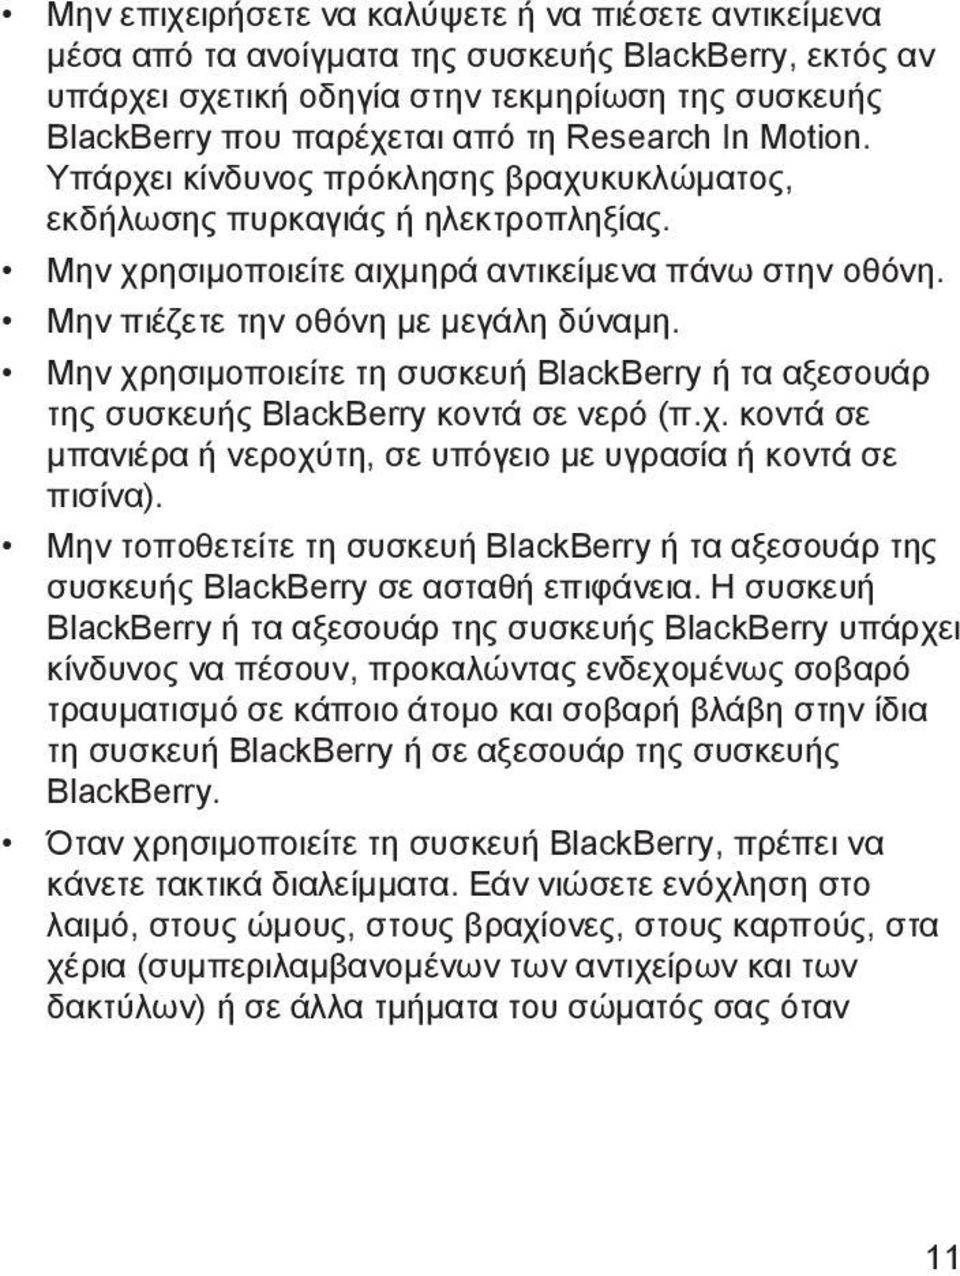 Μην χρησιμοποιείτε τη συσκευή BlackBerry ή τα αξεσουάρ της συσκευής BlackBerry κοντά σε νερό (π.χ. κοντά σε μπανιέρα ή νεροχύτη, σε υπόγειο με υγρασία ή κοντά σε πισίνα).